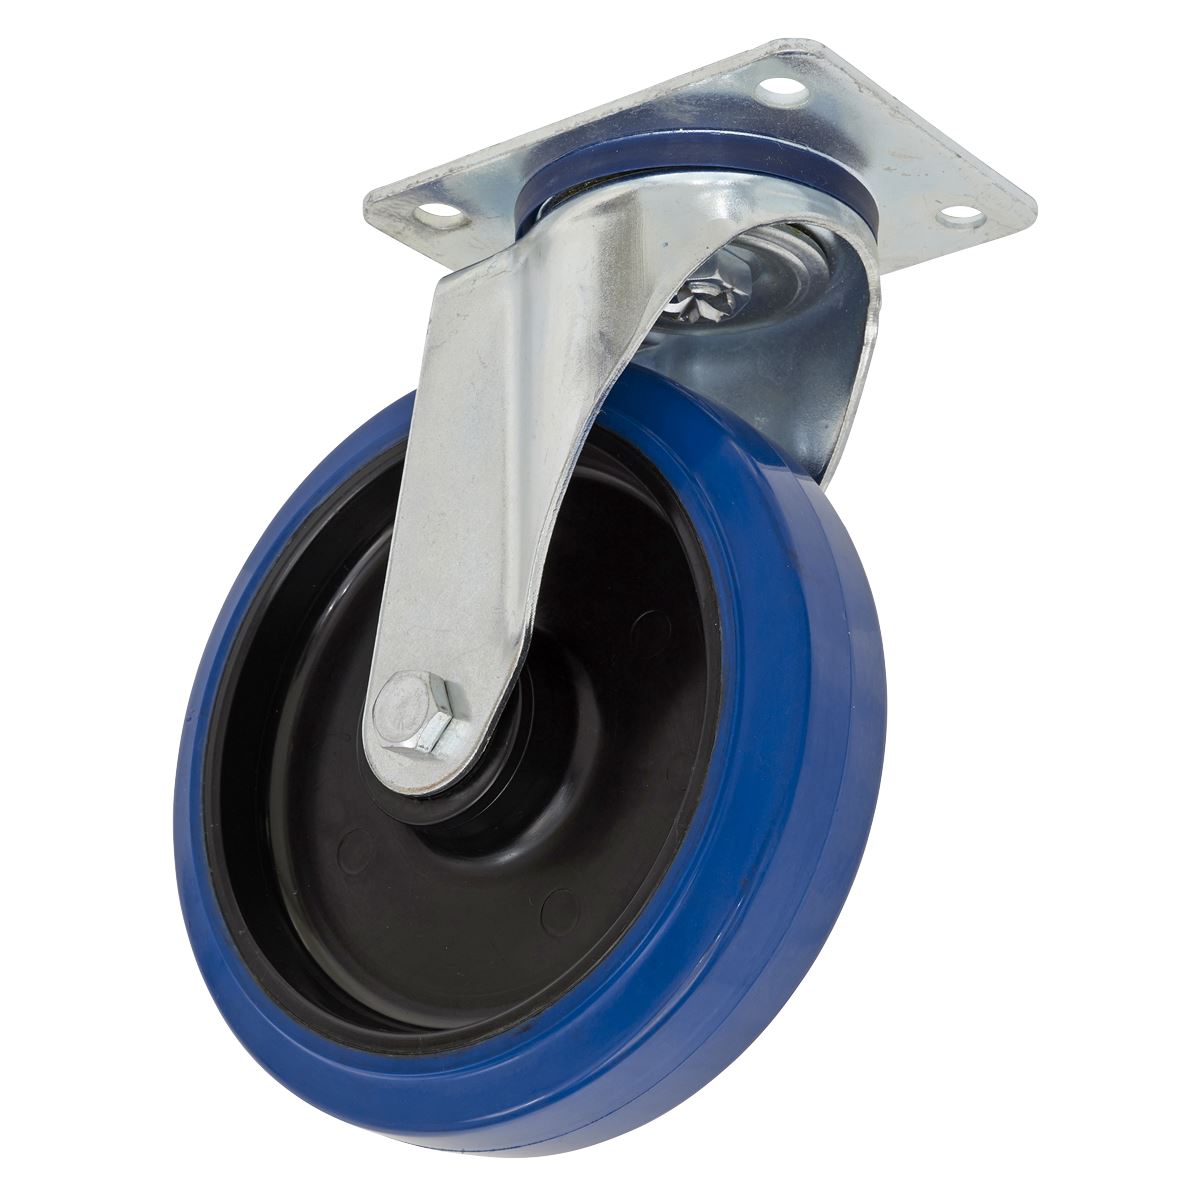 Sealey Heavy-Duty Blue Elastic Rubber Swivel Castor Wheel Ø100mm - Trade